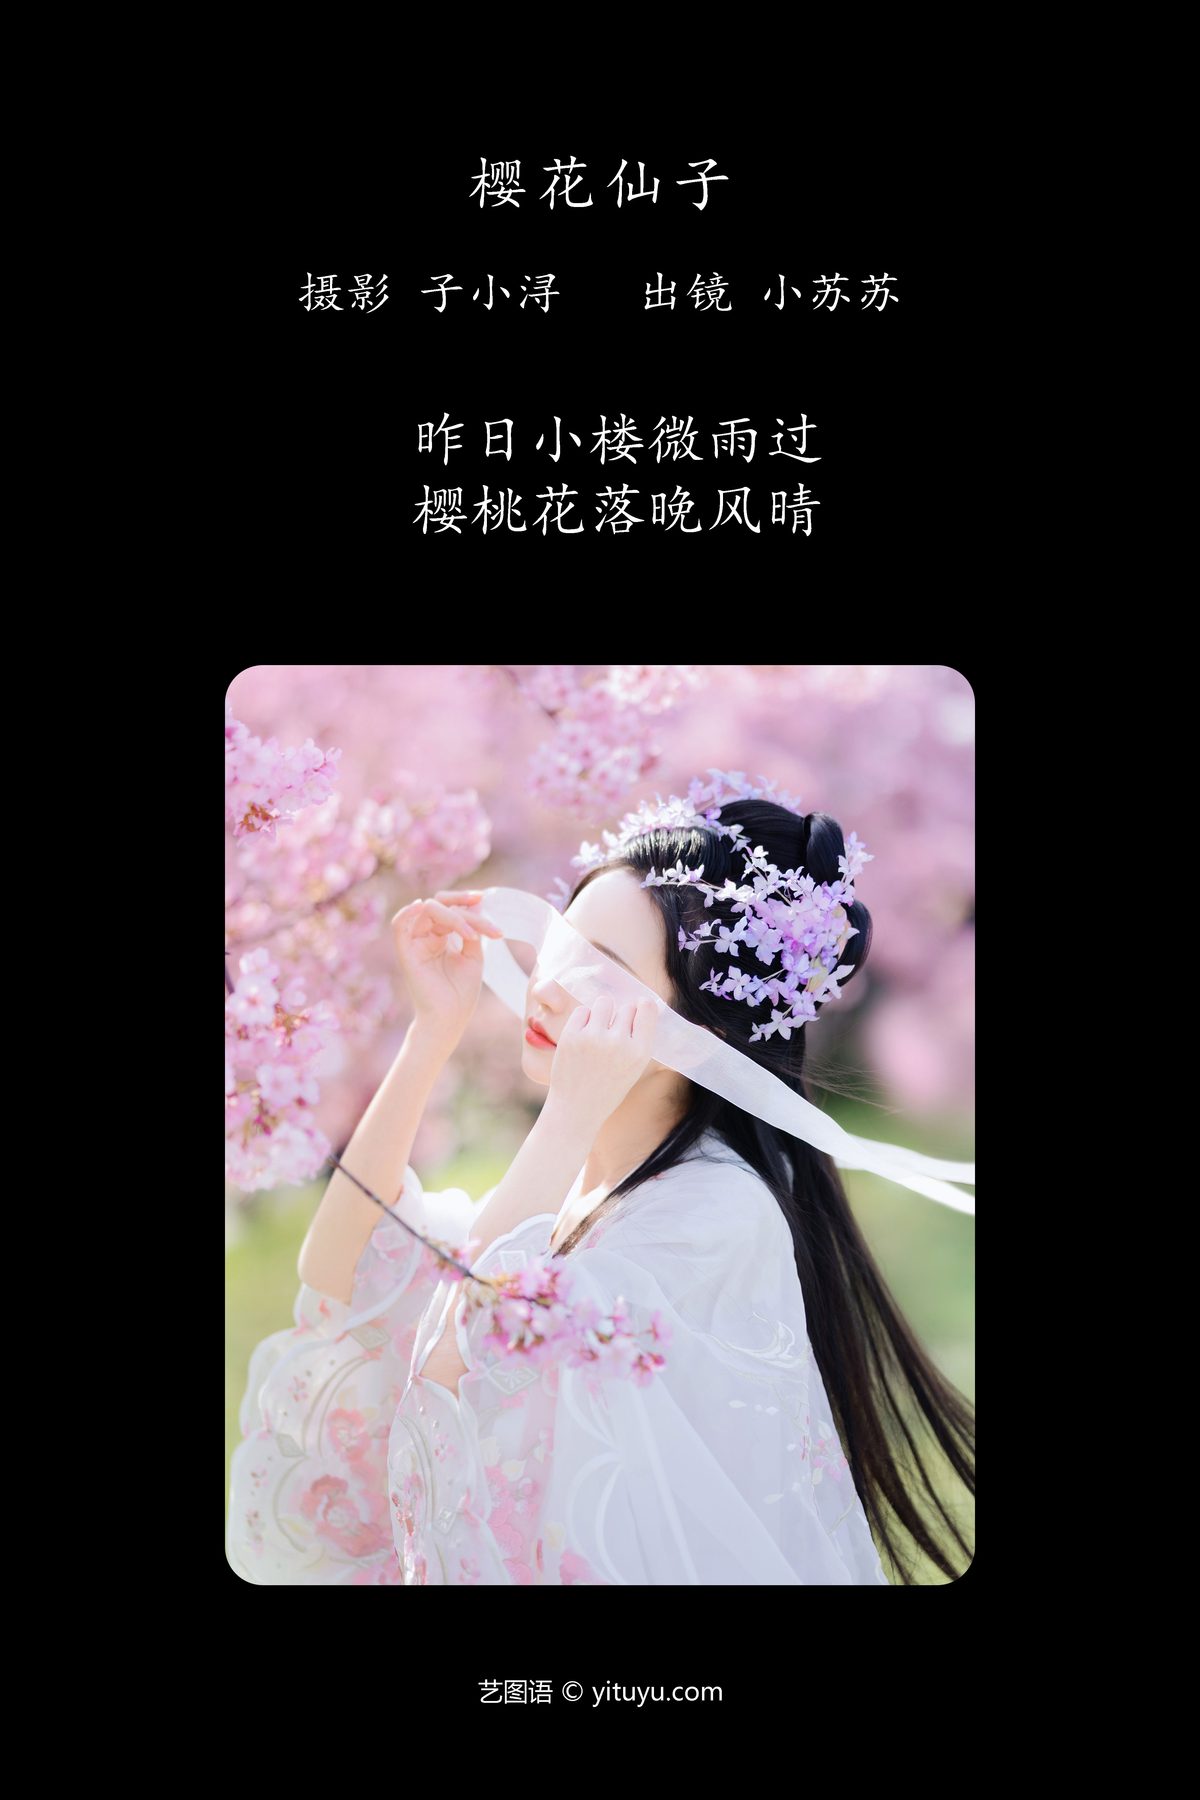 YiTuYu艺图语 Vol 4785 Qi Luo Sheng De Xiao Su Su 0001 7801035024.jpg